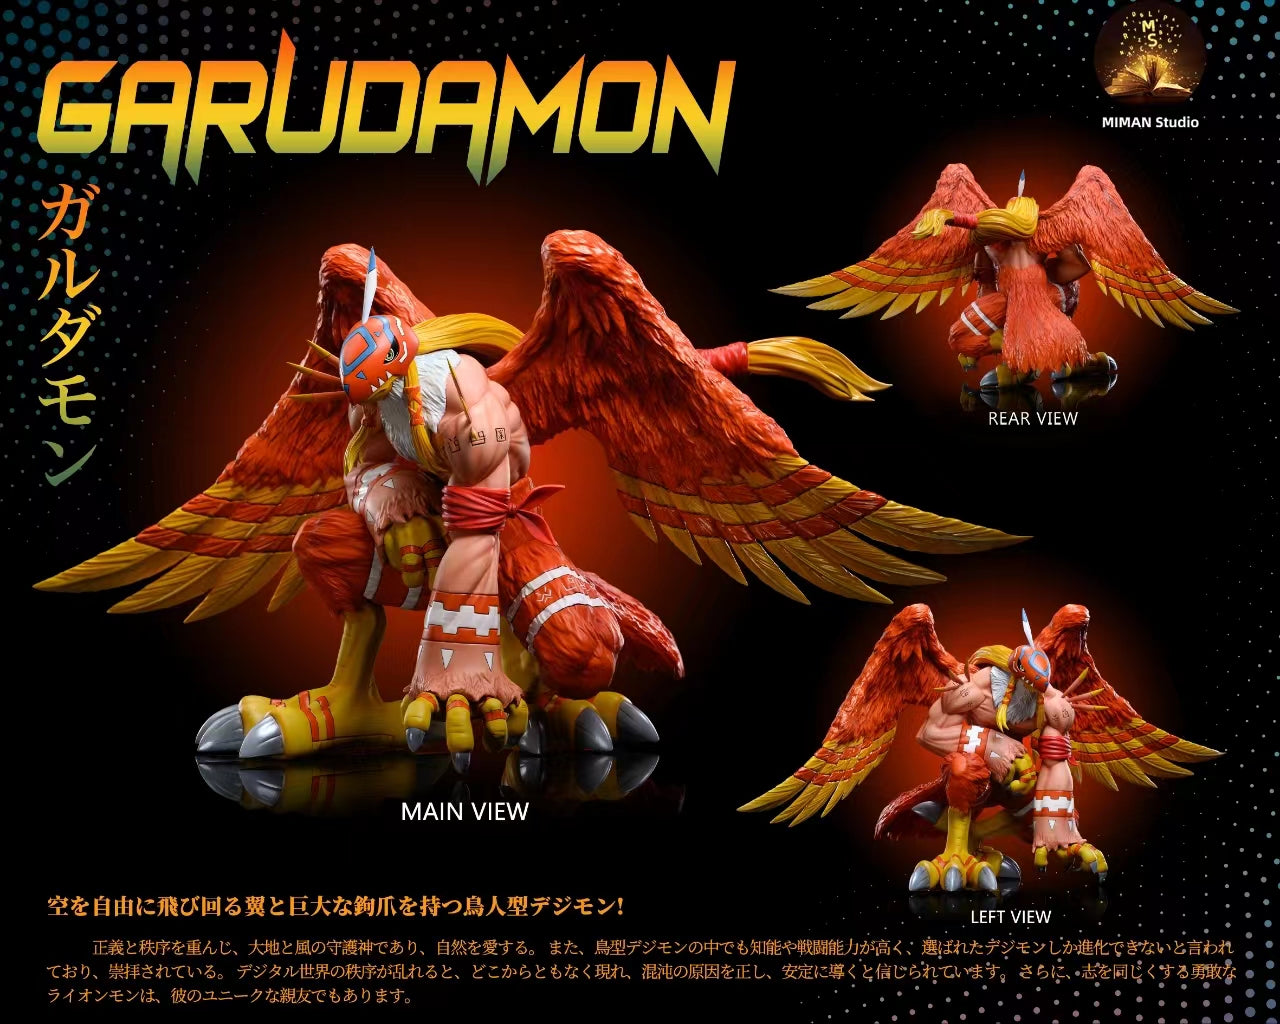 〖Pre-order〗Digimon Pyocomon Garudamon - Miman Studio